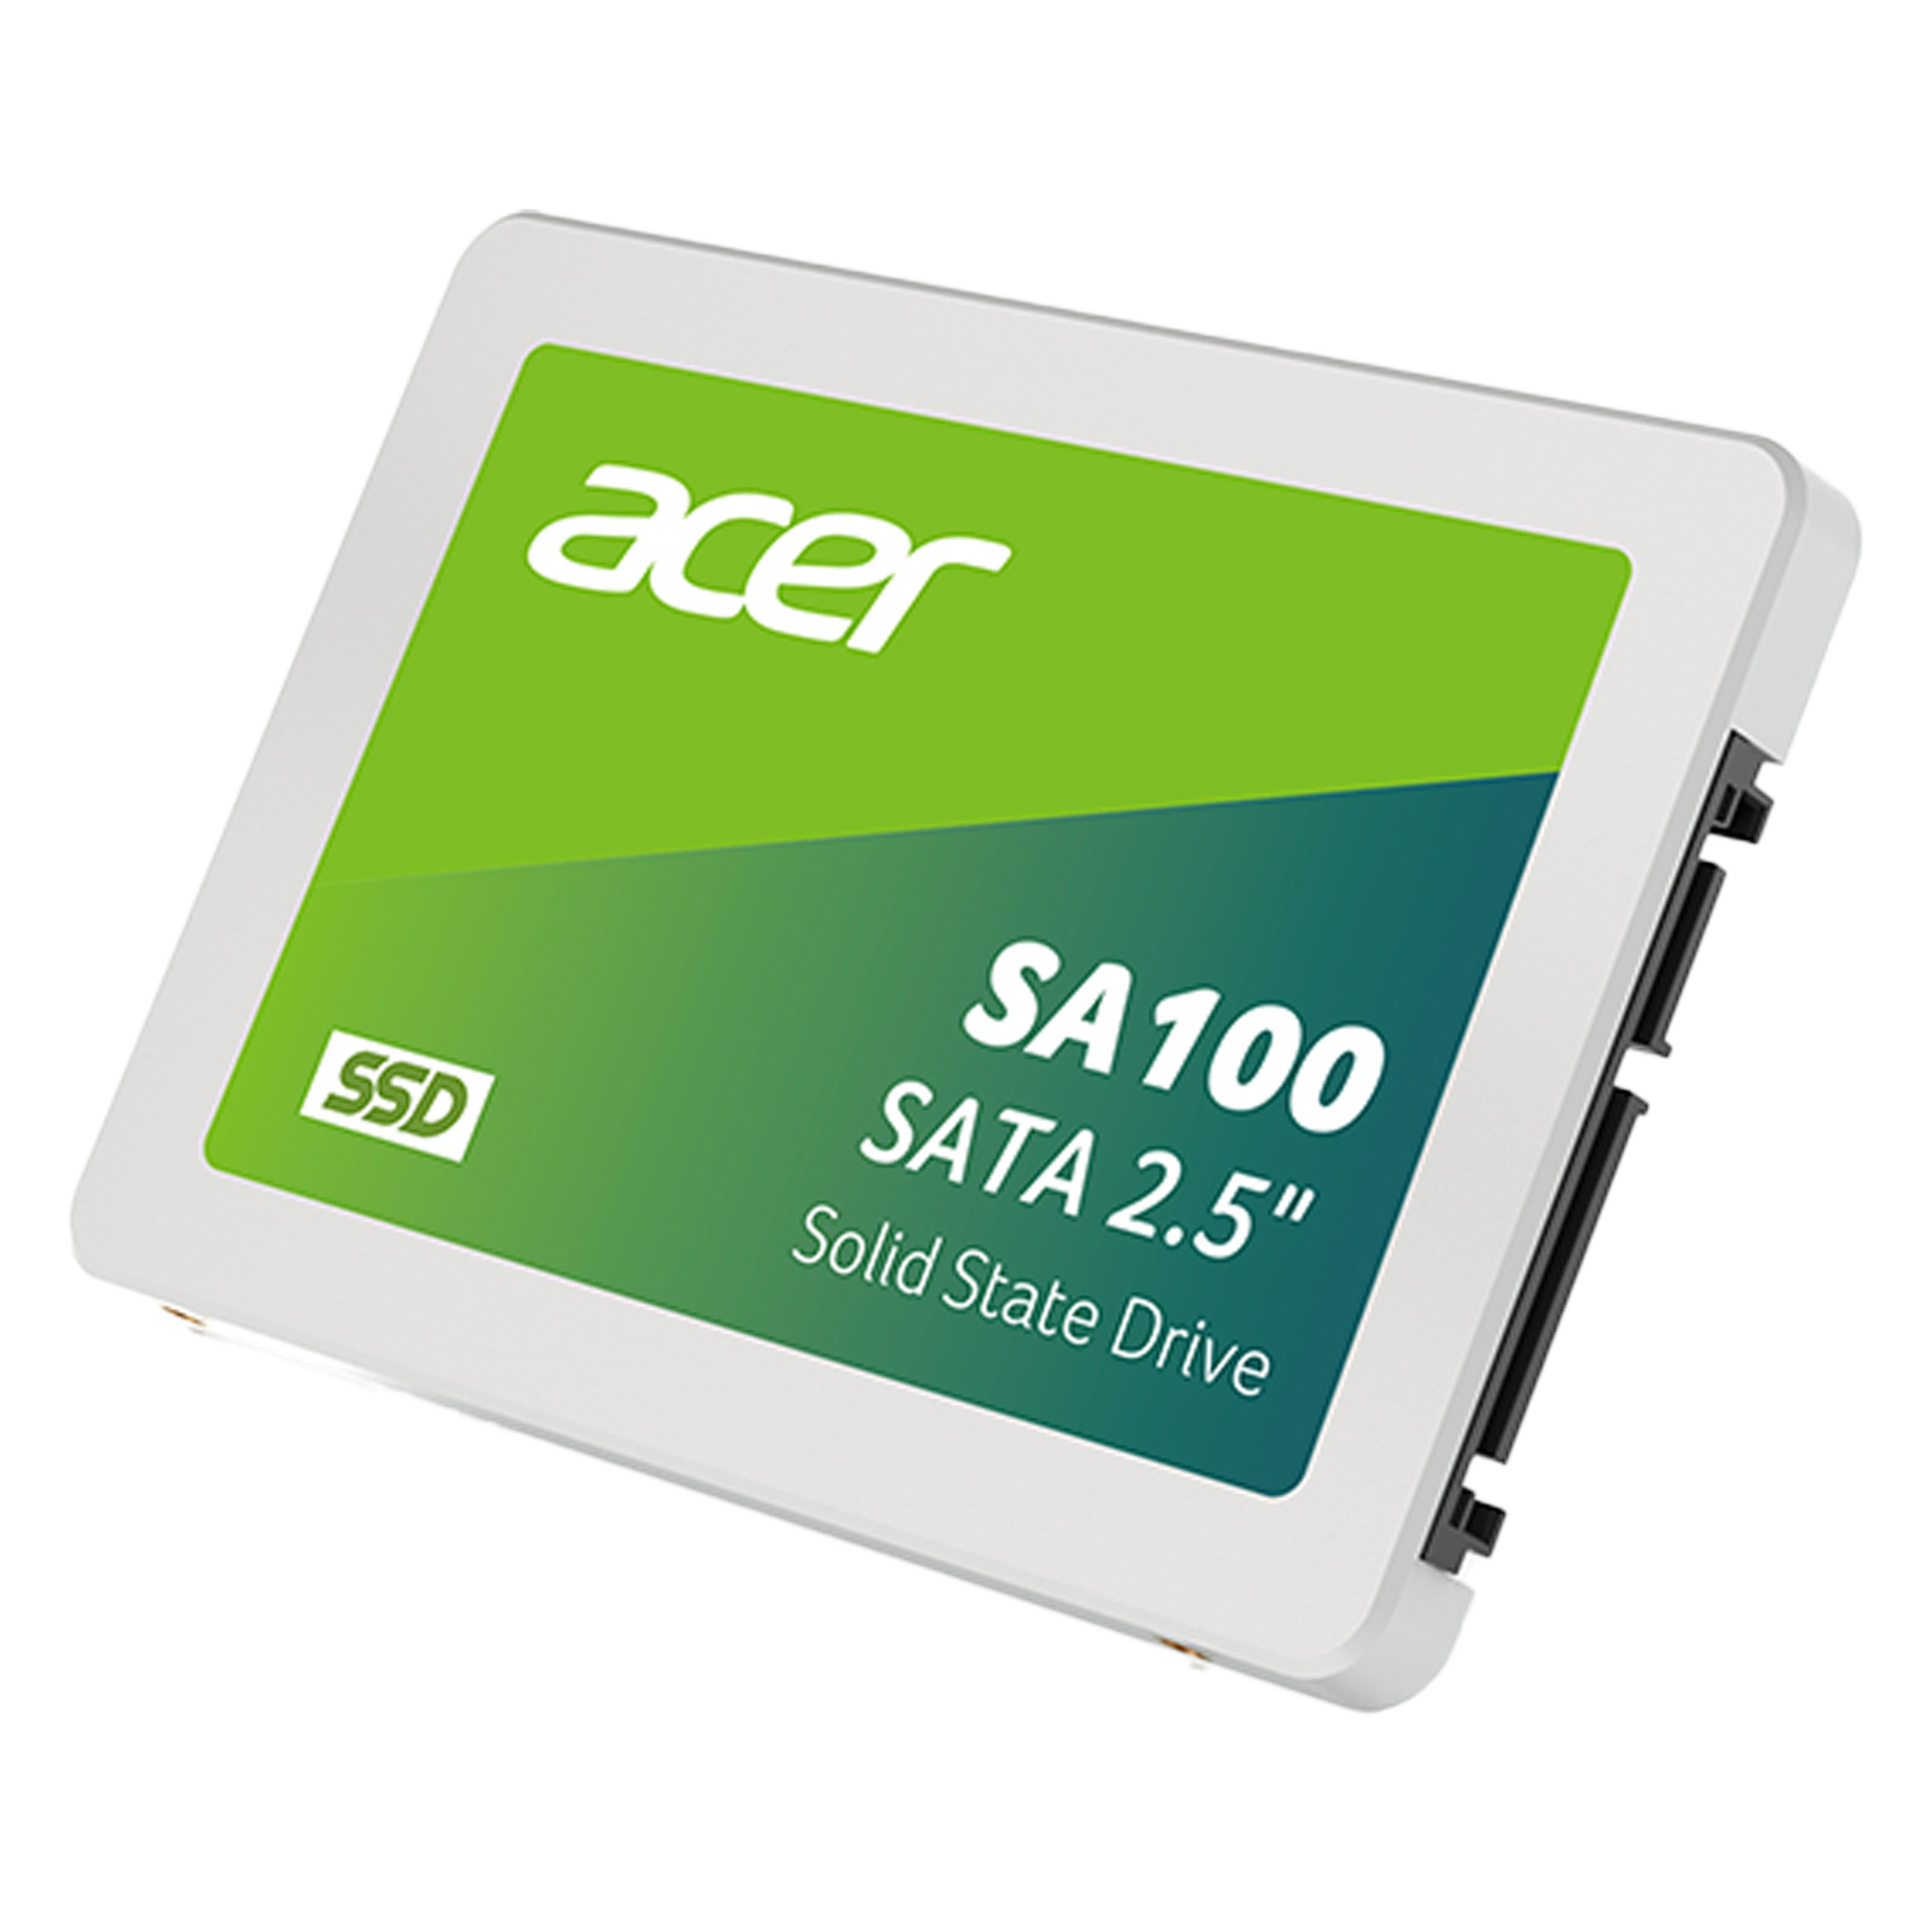 ACER SSD SA100 2.5'' 960GB Bilgisayar Çevre Birimleri